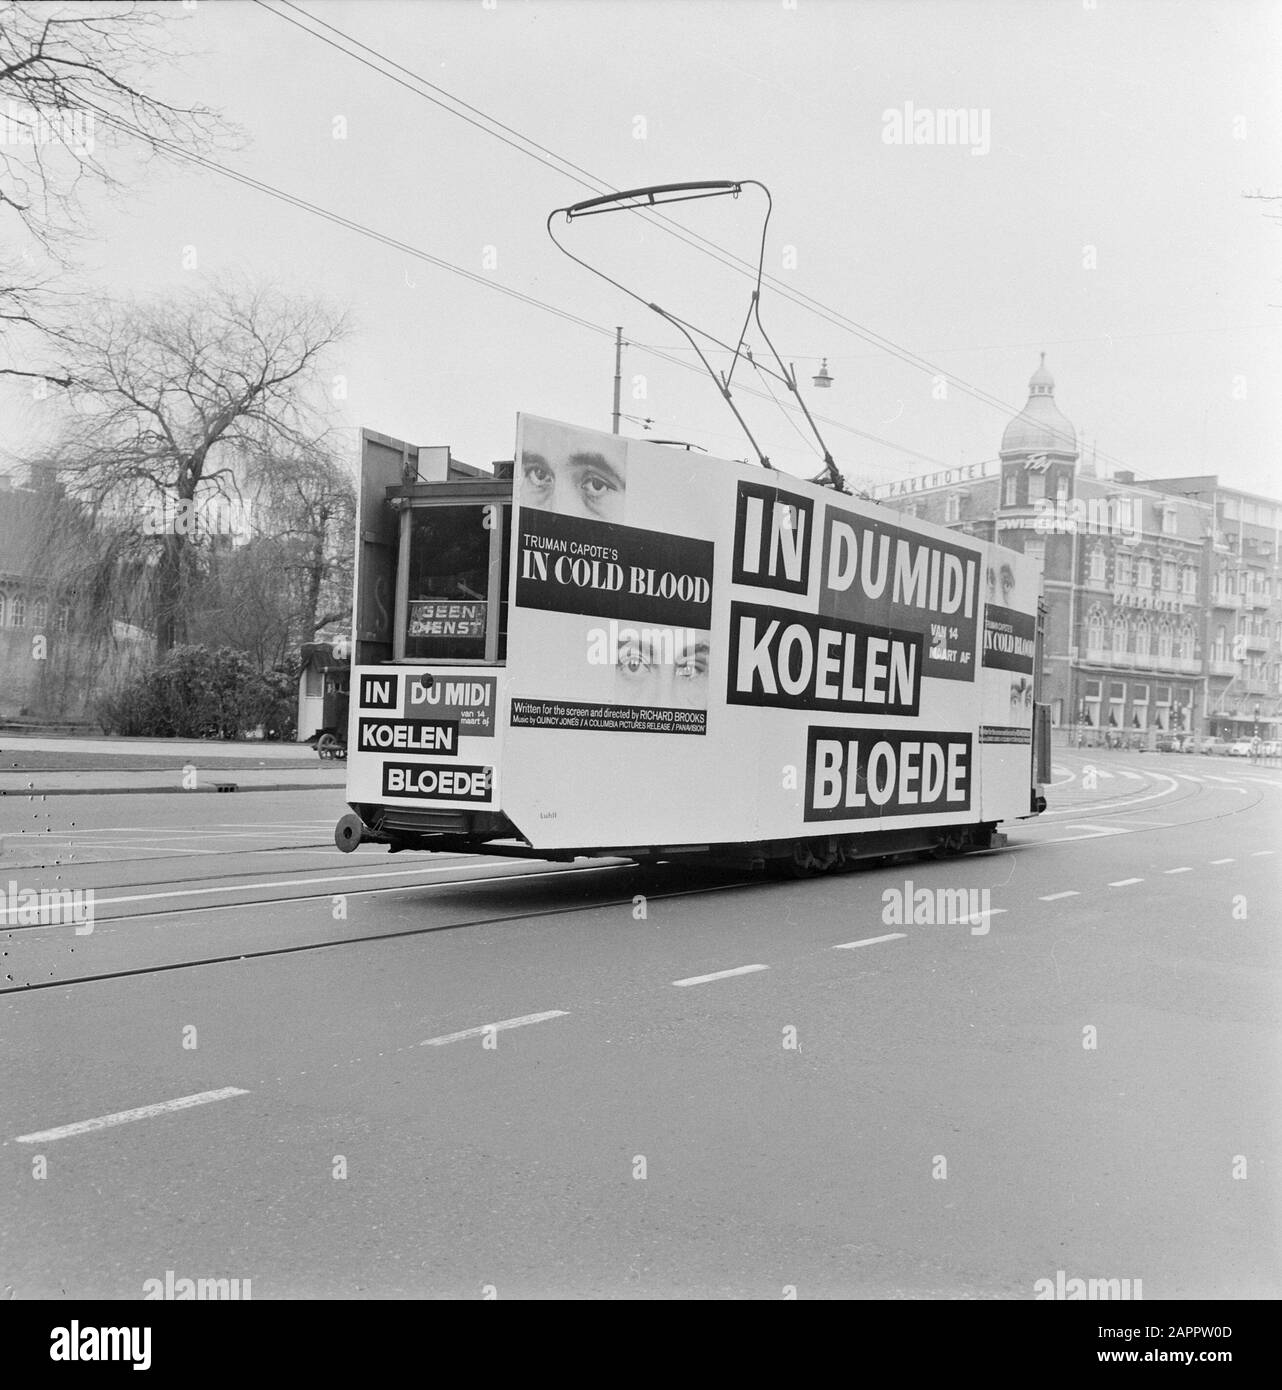 Films de commande Columbia. Tram avec publicité pour le film à Kool Bloede [In Cold Blood] Date : 13 mars 1968 mots clés : films, publicité, trams Banque D'Images